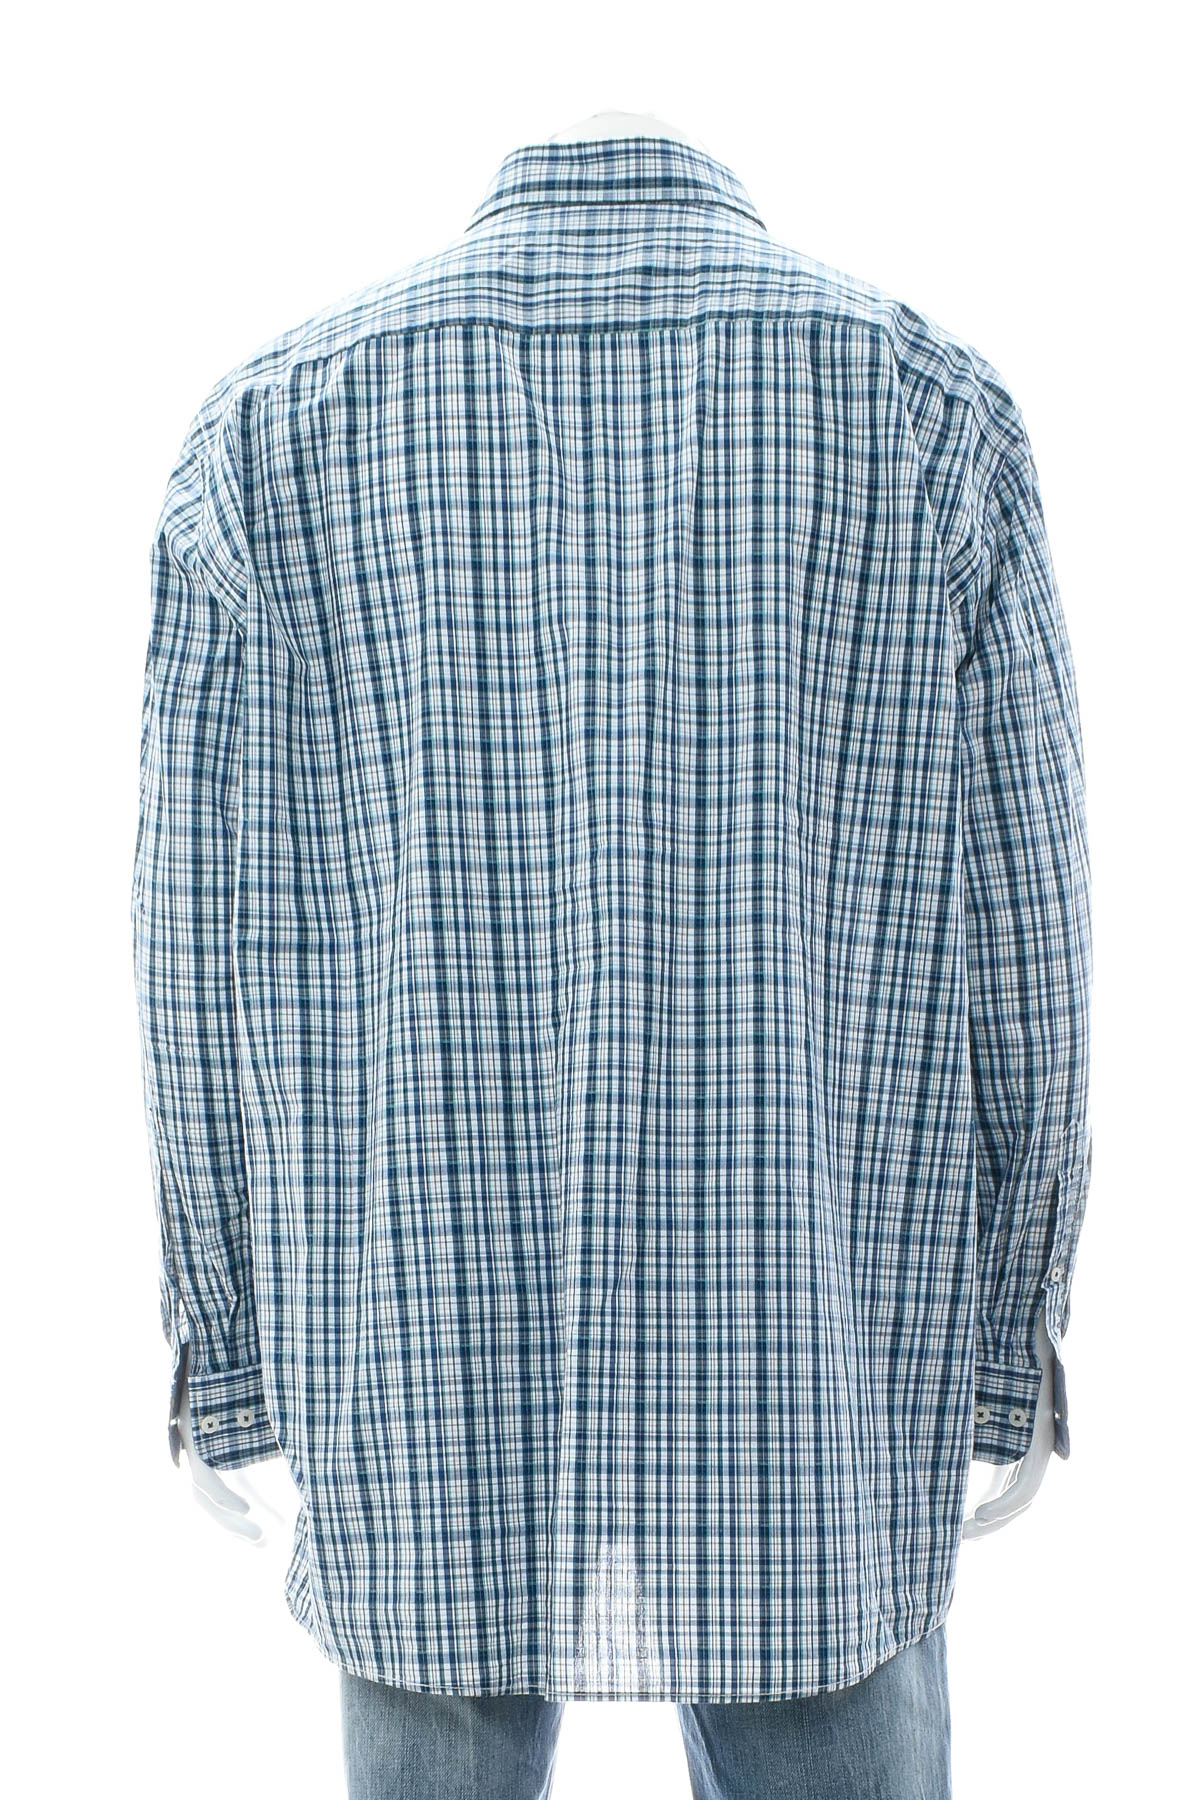 Men's shirt - Casa Moda - 1